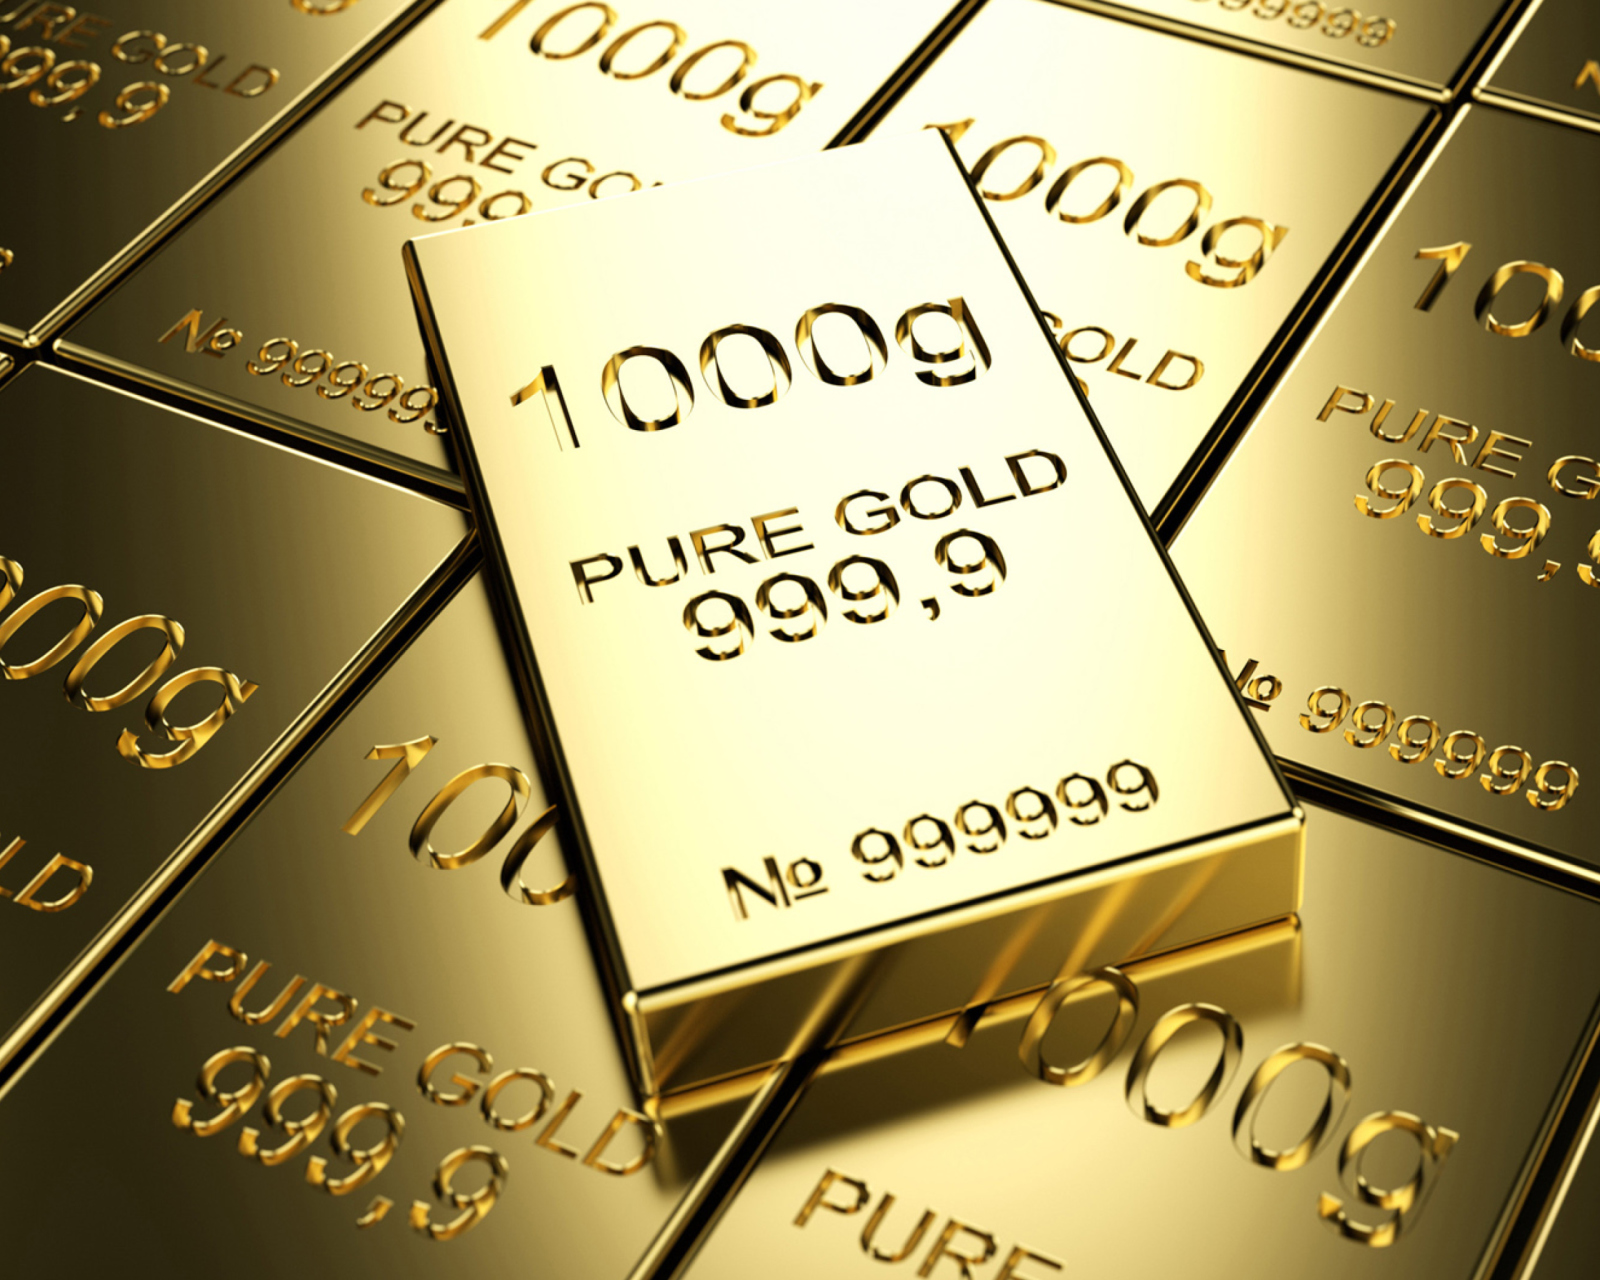 Sfondi Pure Gold 1600x1280